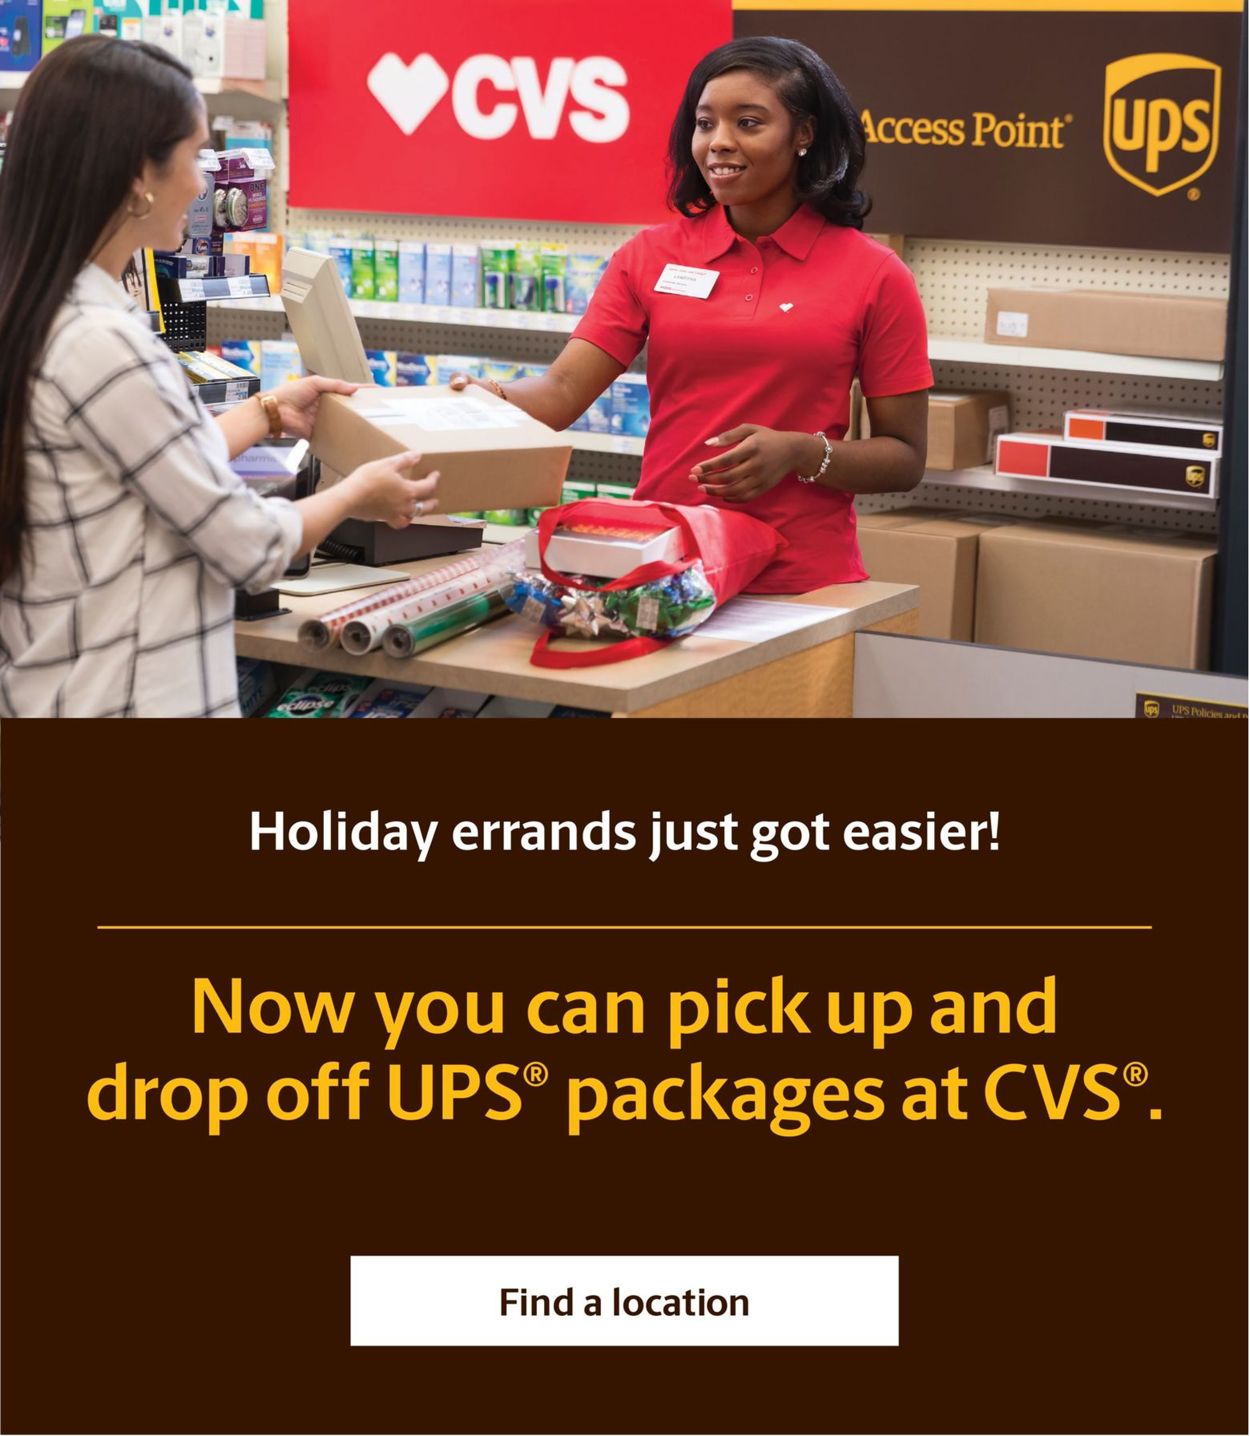 Catalogue CVS Pharmacy - Holiday Ad 2019 from 12/15/2019